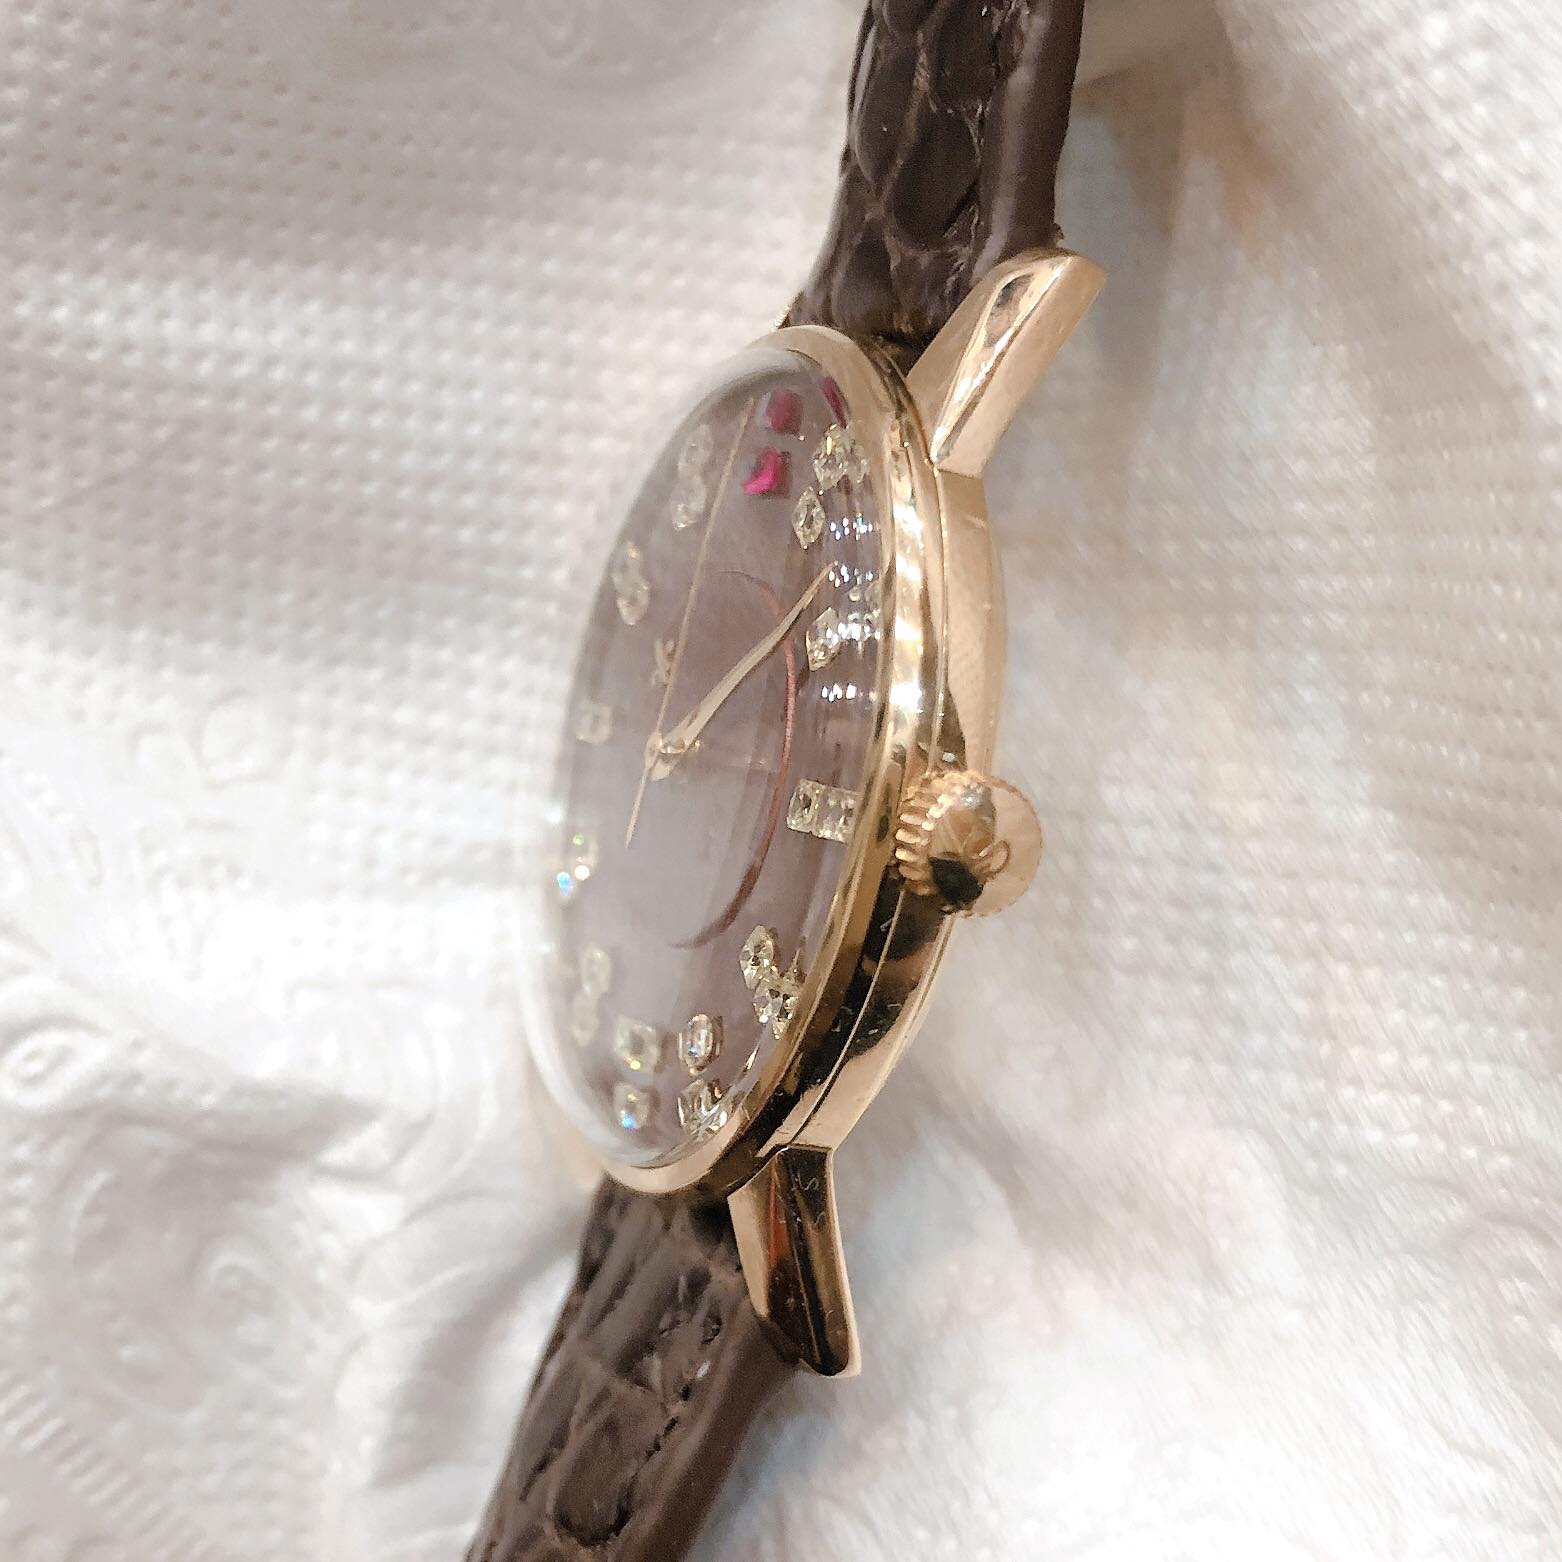 Đồng hồ cổ Seiko Lord Marvel lên dây 14k goldfilled chính hãng Nhật Bản